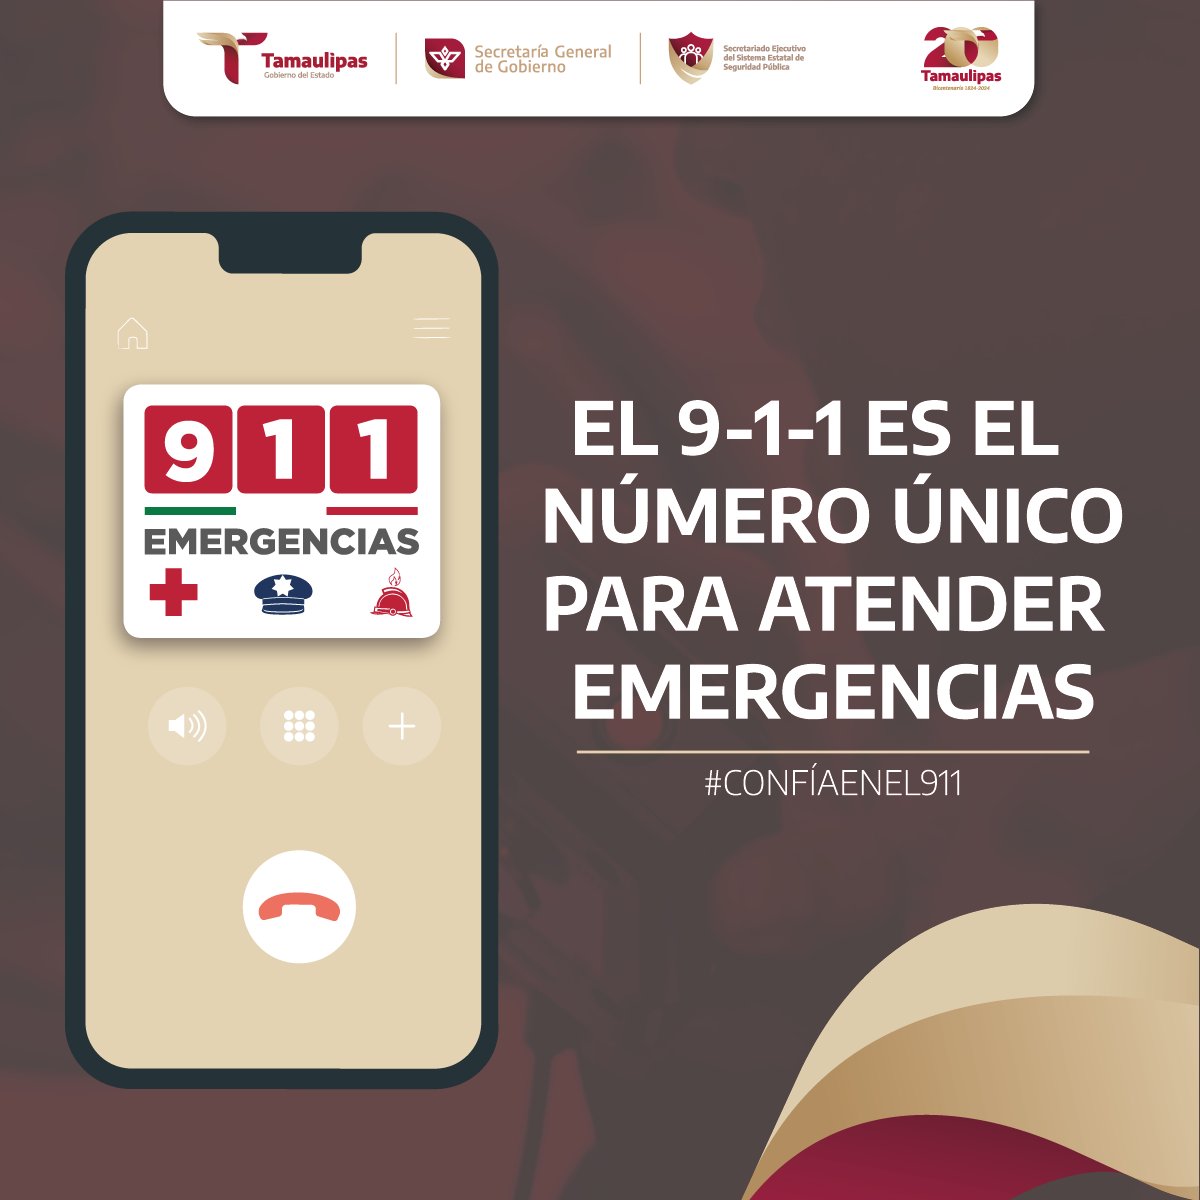 Ante cualquier incidente, la Línea de Emergencias 9-1-1 es el primer paso para obtener auxilio de las corporaciones correspondientes.

#ConfíaEnEl911